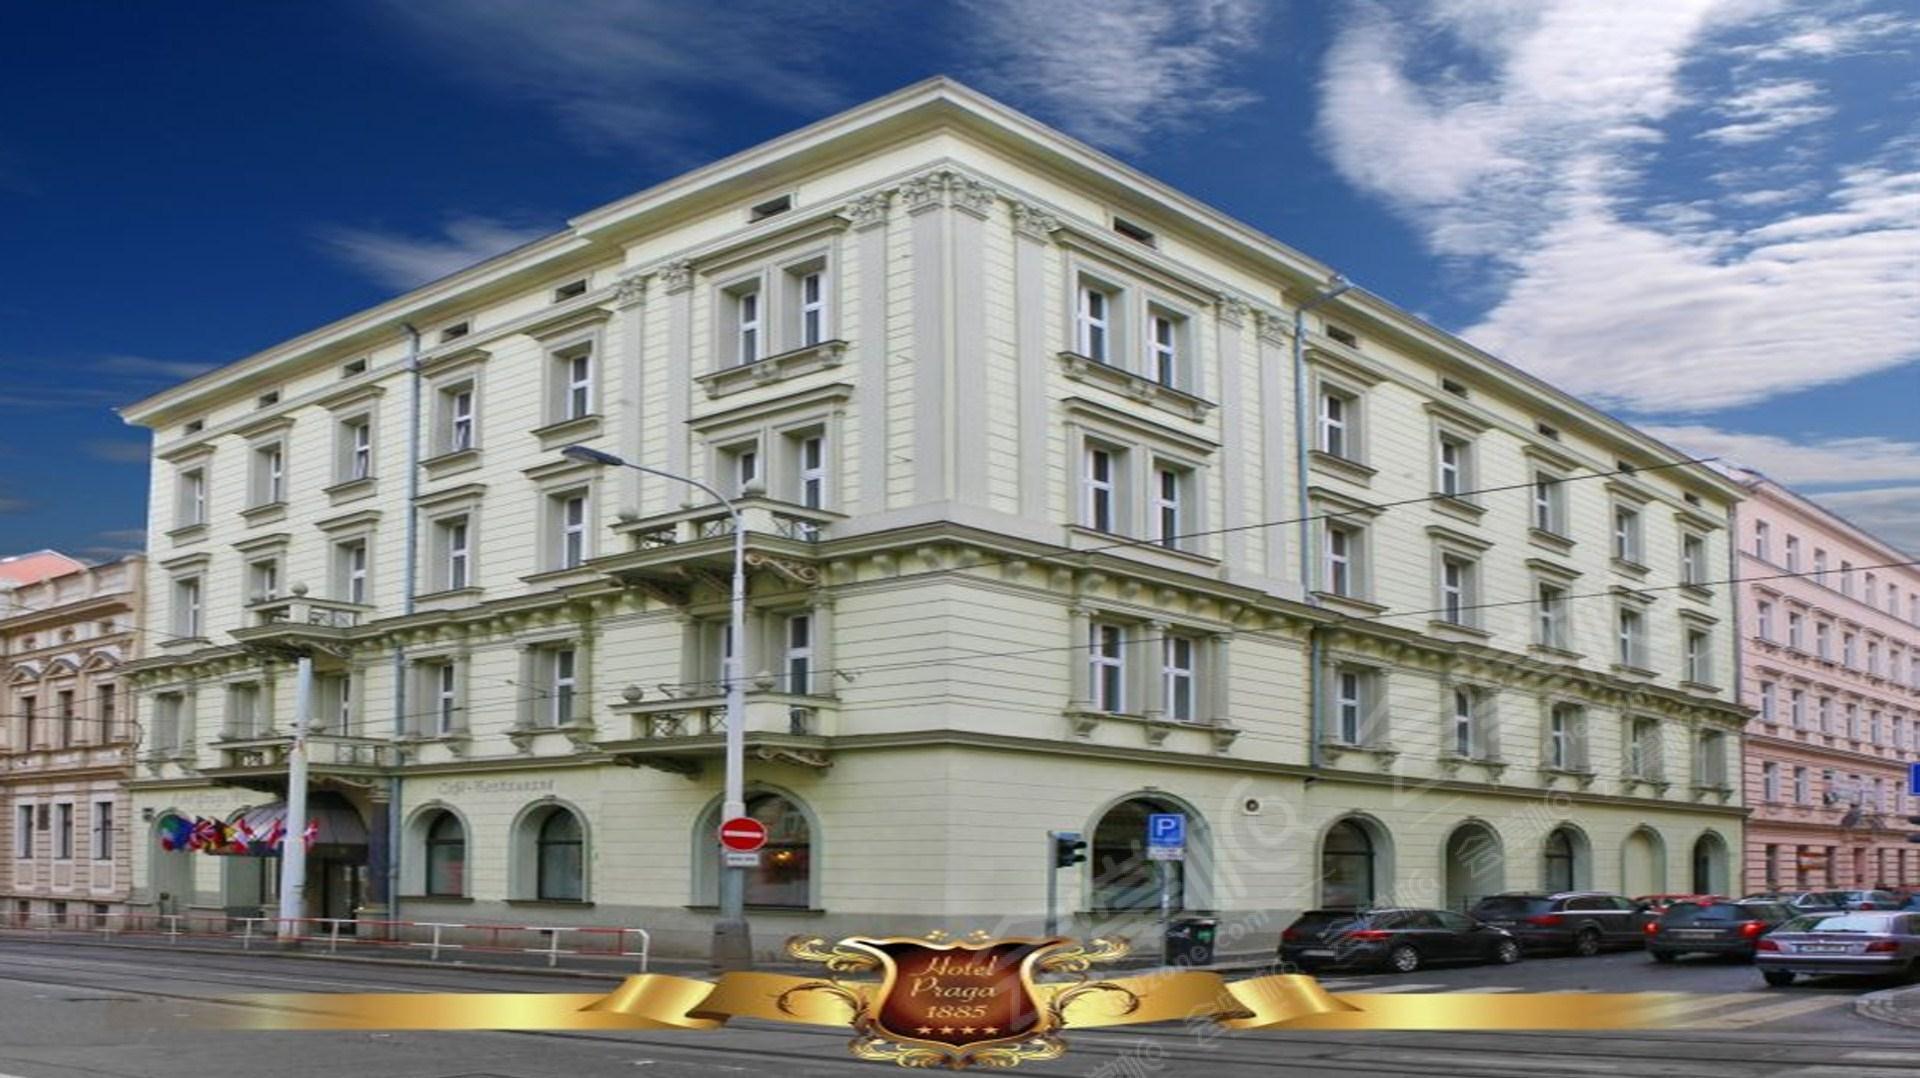 Hotel Praga 1885